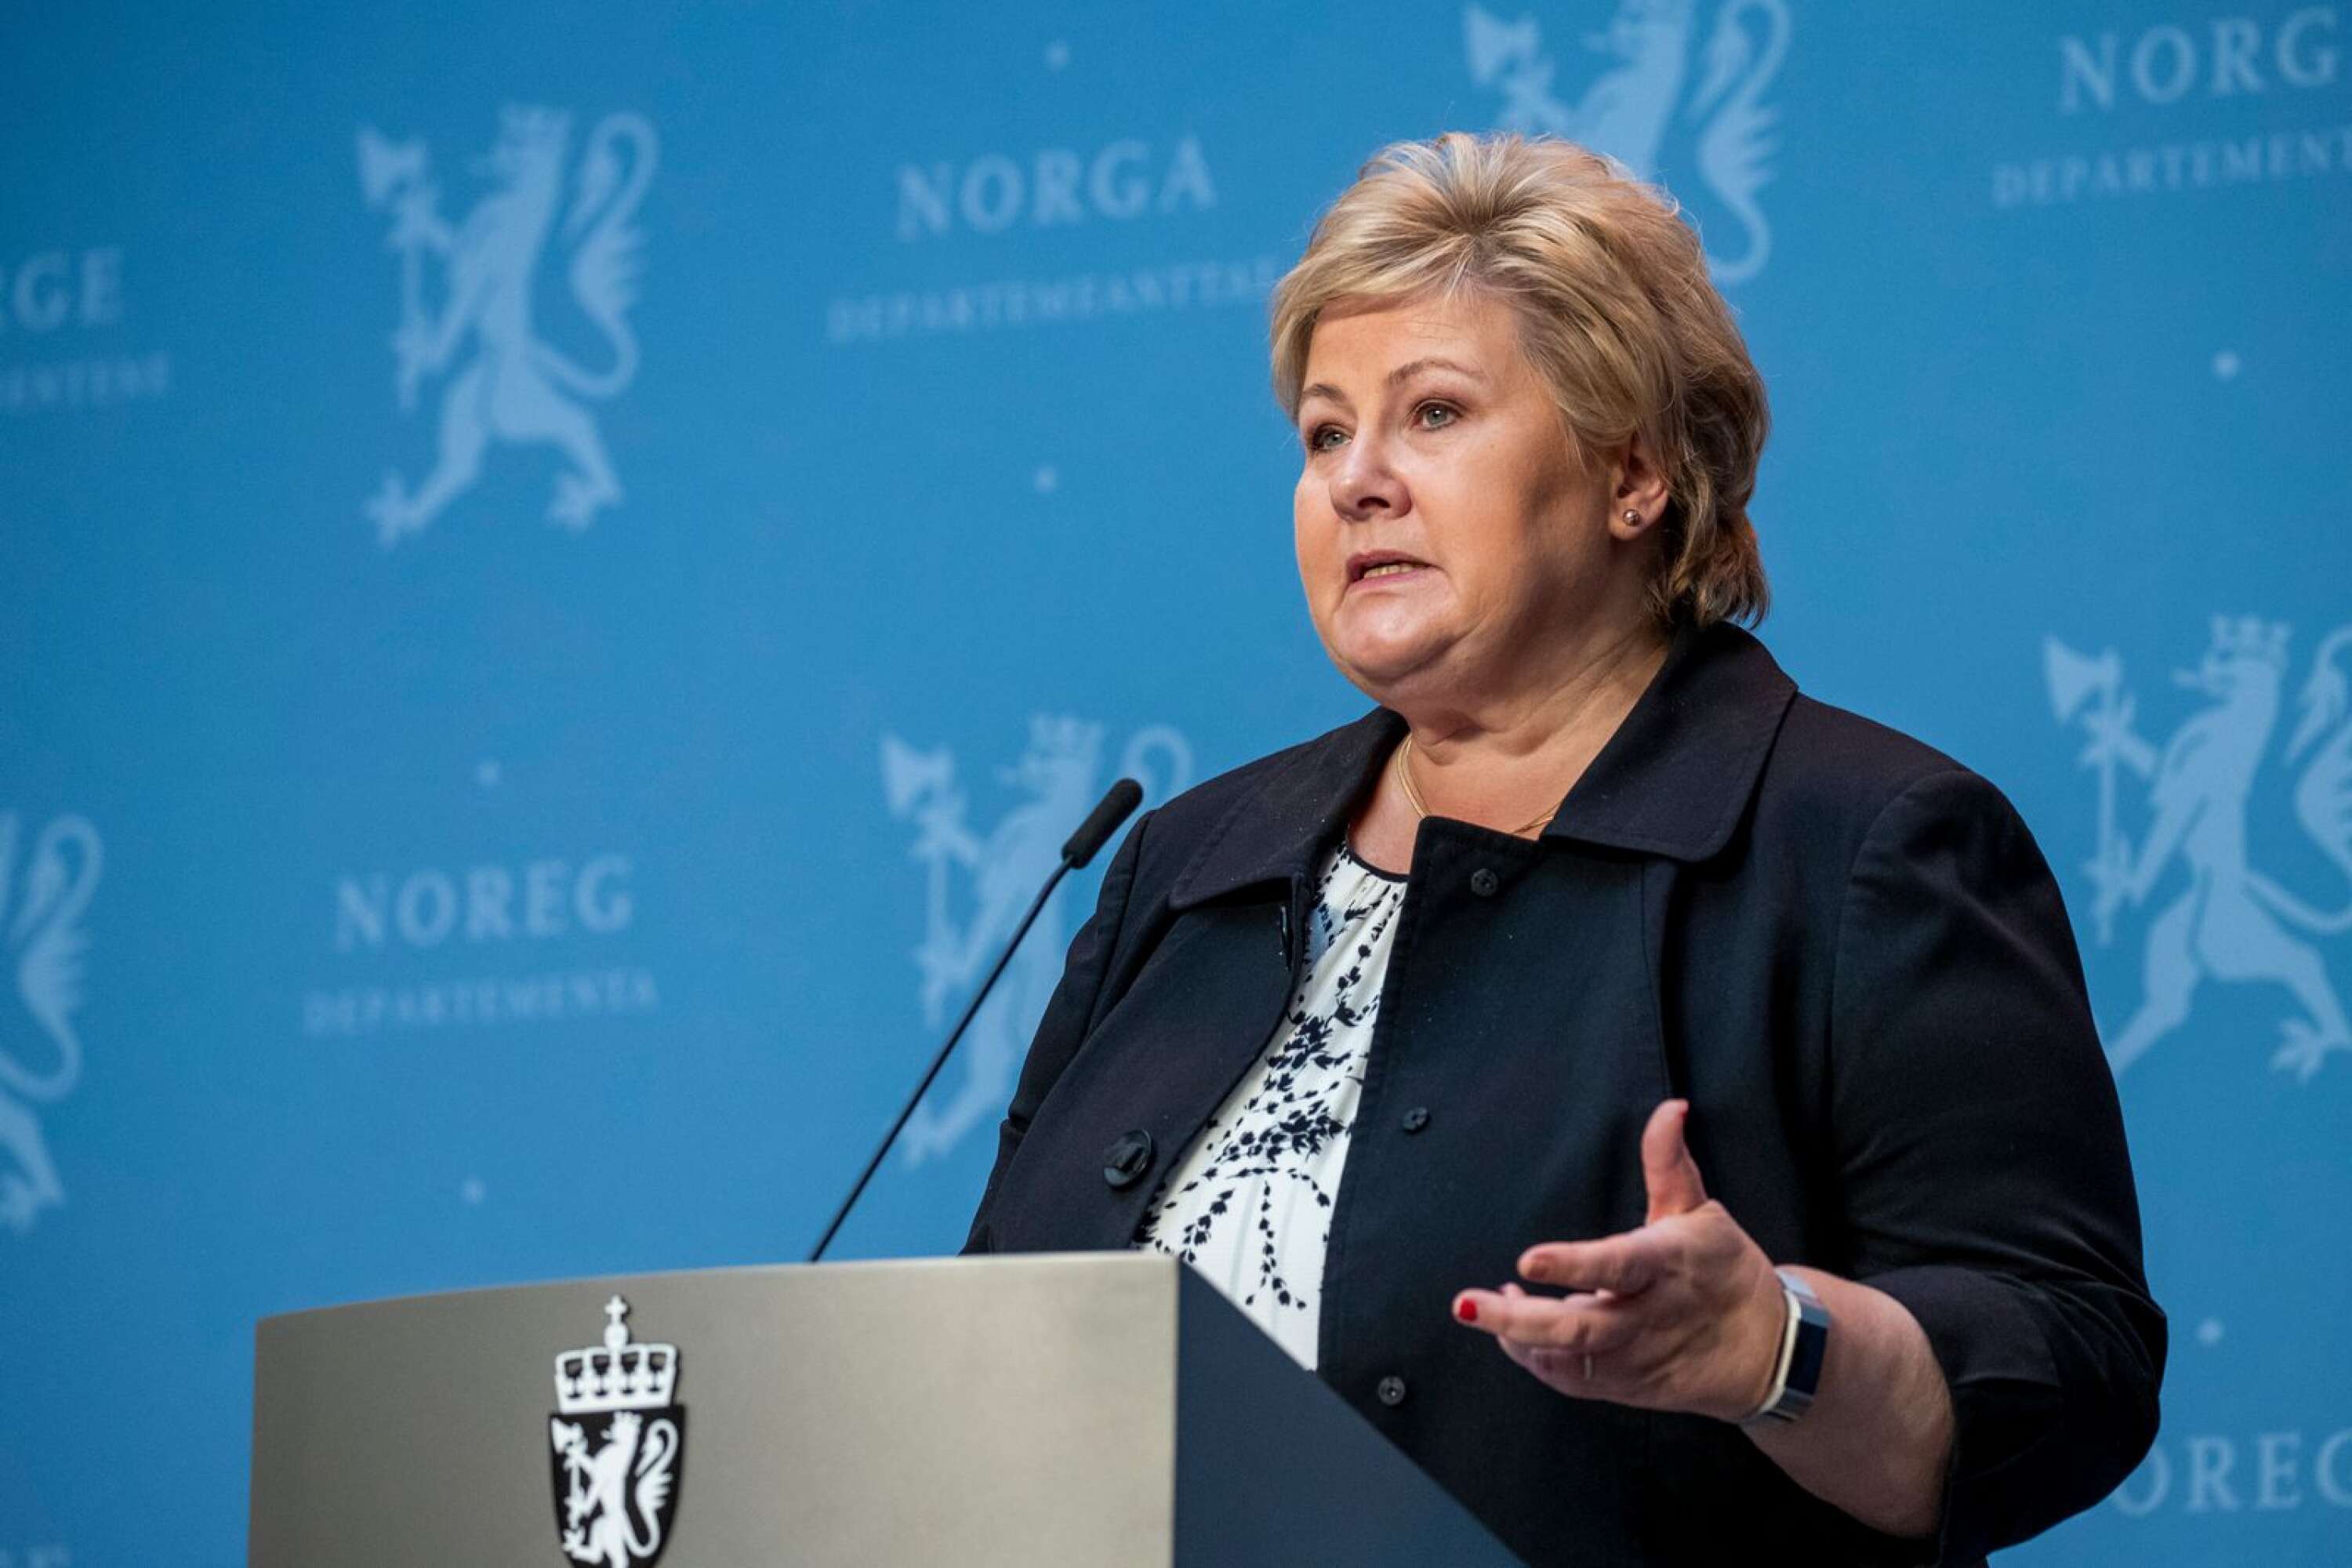 Statsminister Erna Solberg meddelade på fredagen att Norge från och med lördag ska återgå till normal vardag och att i stort sett alla restriktioner försvinner.